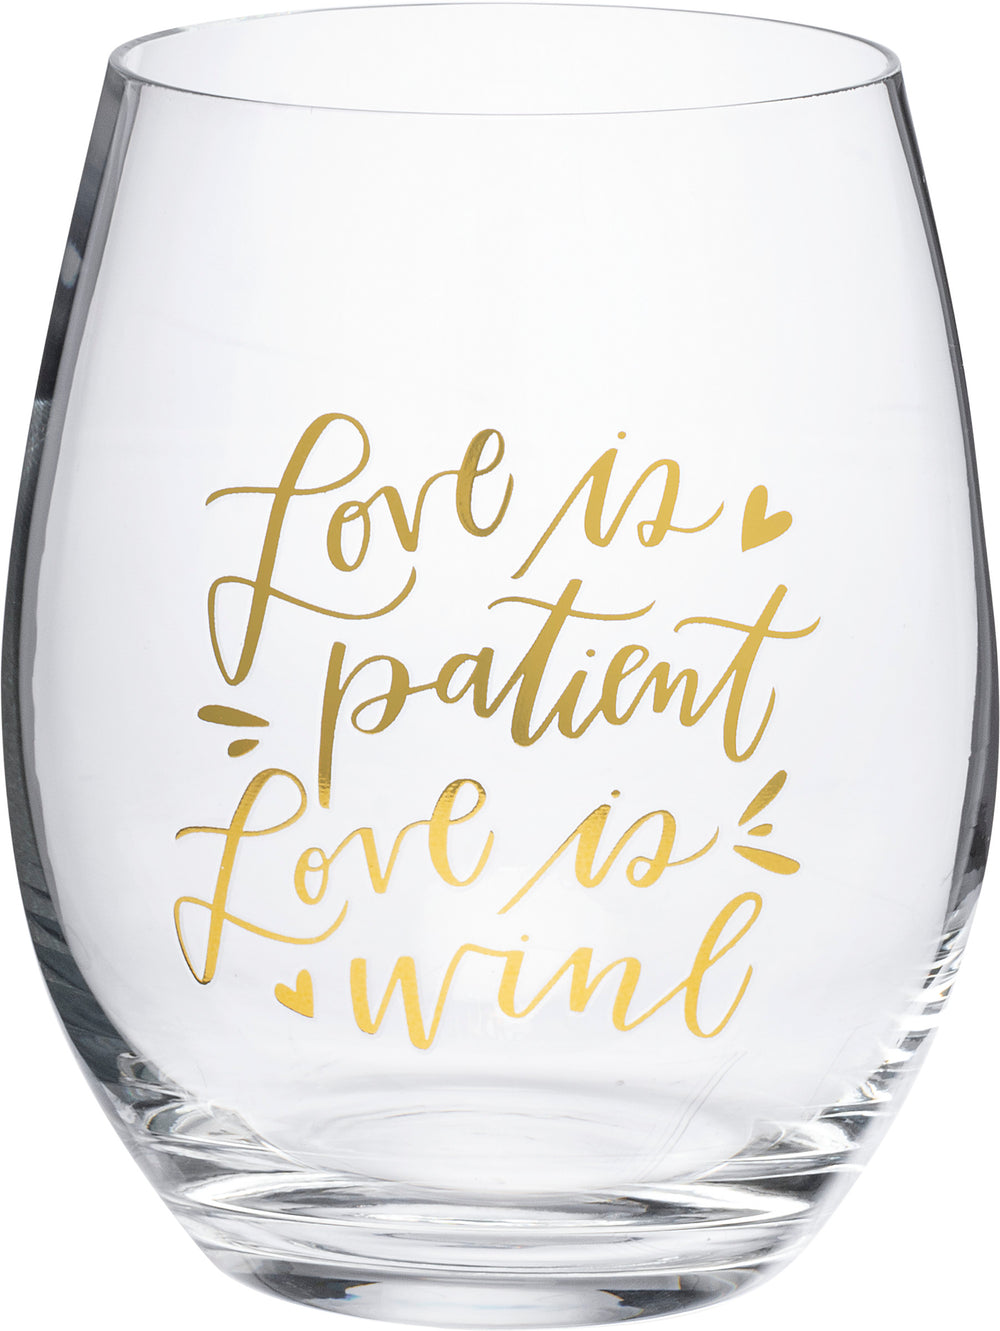 El amor es paciente El amor es vino - Copa de vino sin tallo